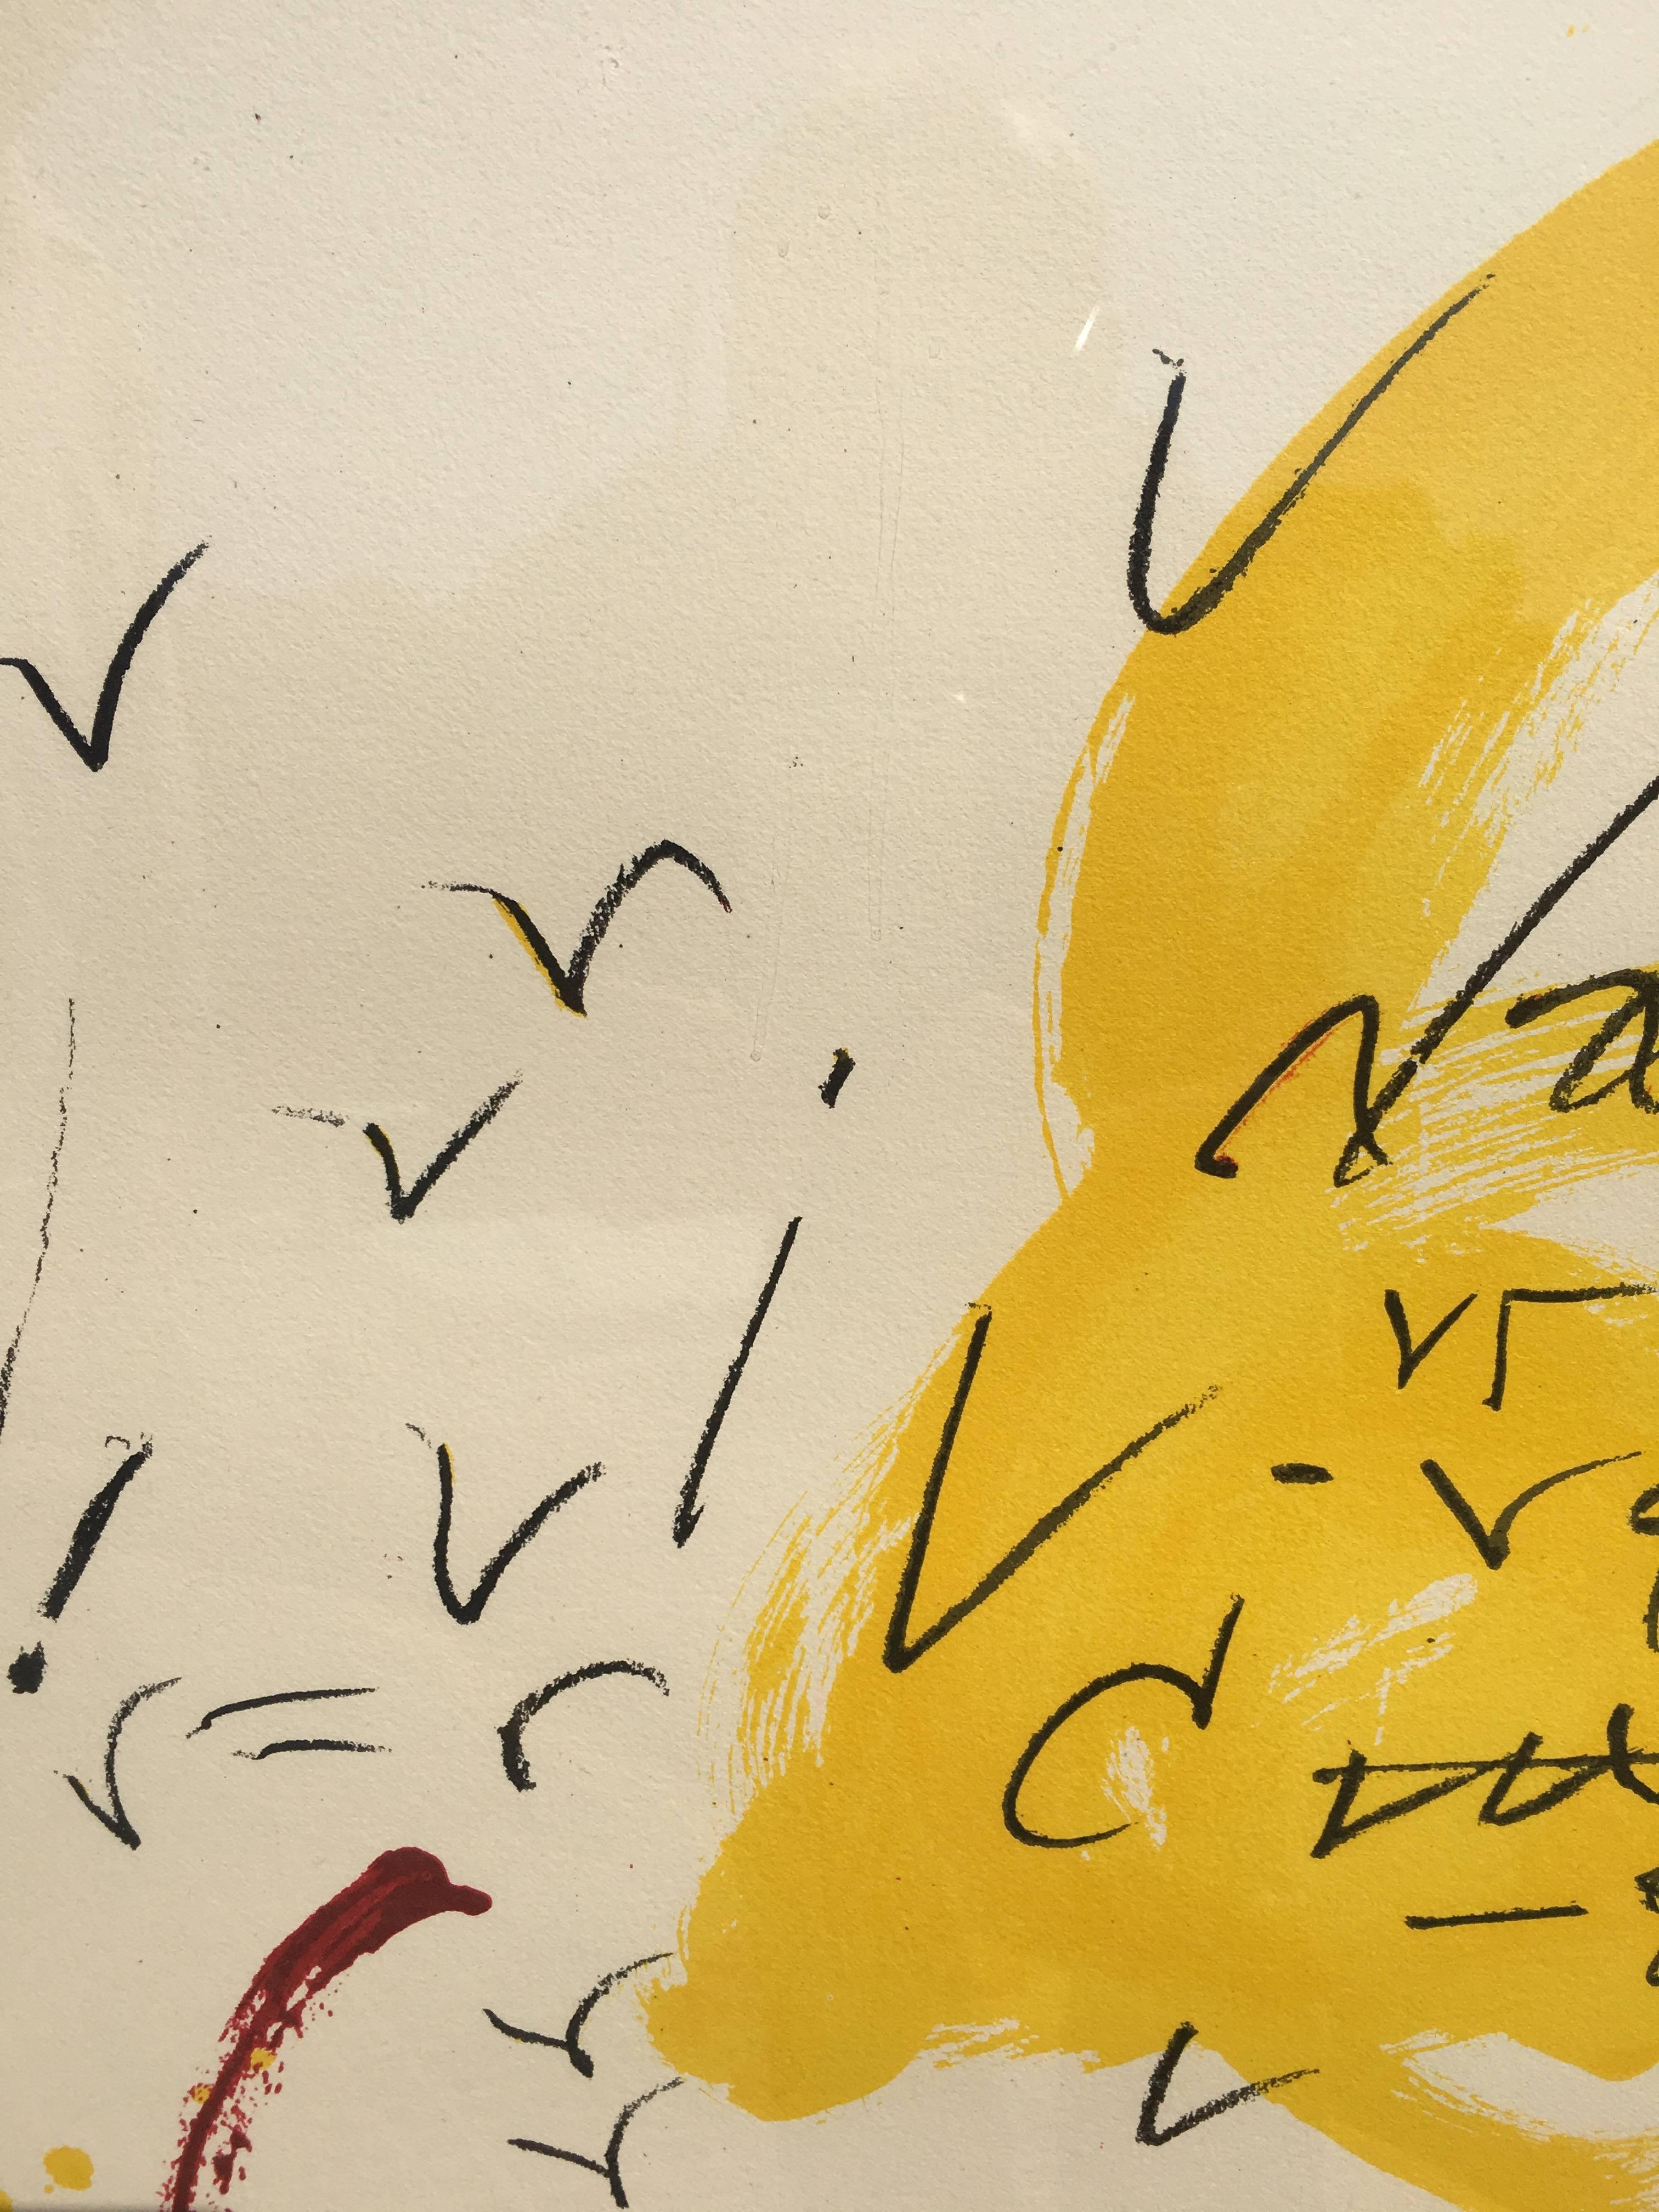 Tapies Litografia original  1974
 TAPIES a été le représentant Maximum de l'art abstrait espagnol du 20ème siècle. Ses œuvres sont représentées dans des musées et des fondations du monde entier.

Œuvre graphique du professeur espagnol Antoni